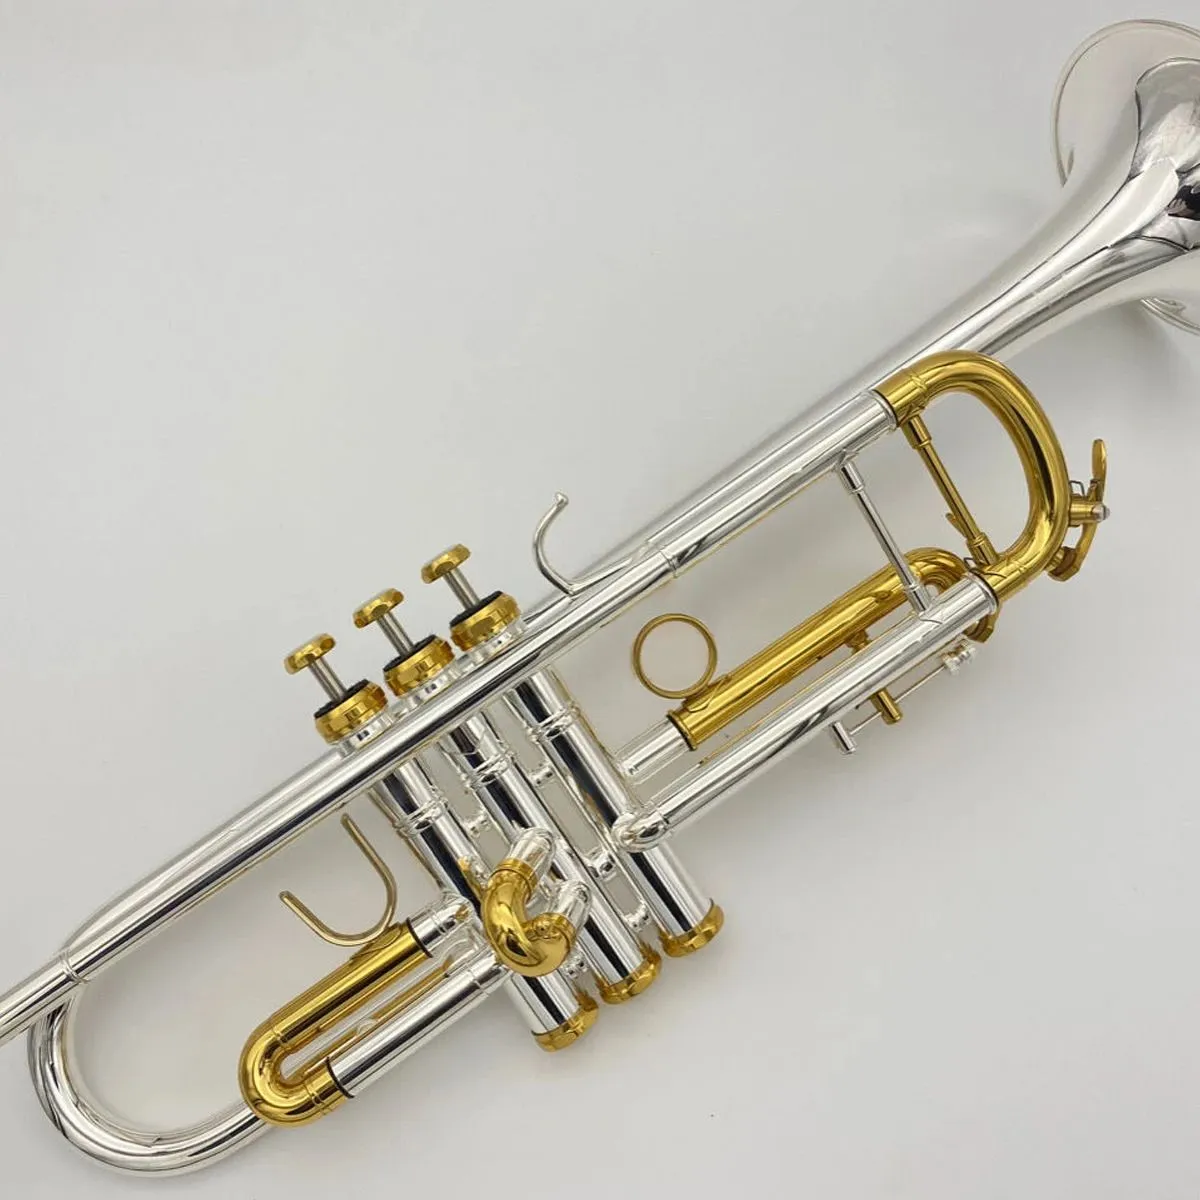 アメリカのブランドプロフェッショナルトランペット楽器の初心者が銀メッキの金メッキボタンリミッター3トーントランペットを演奏する